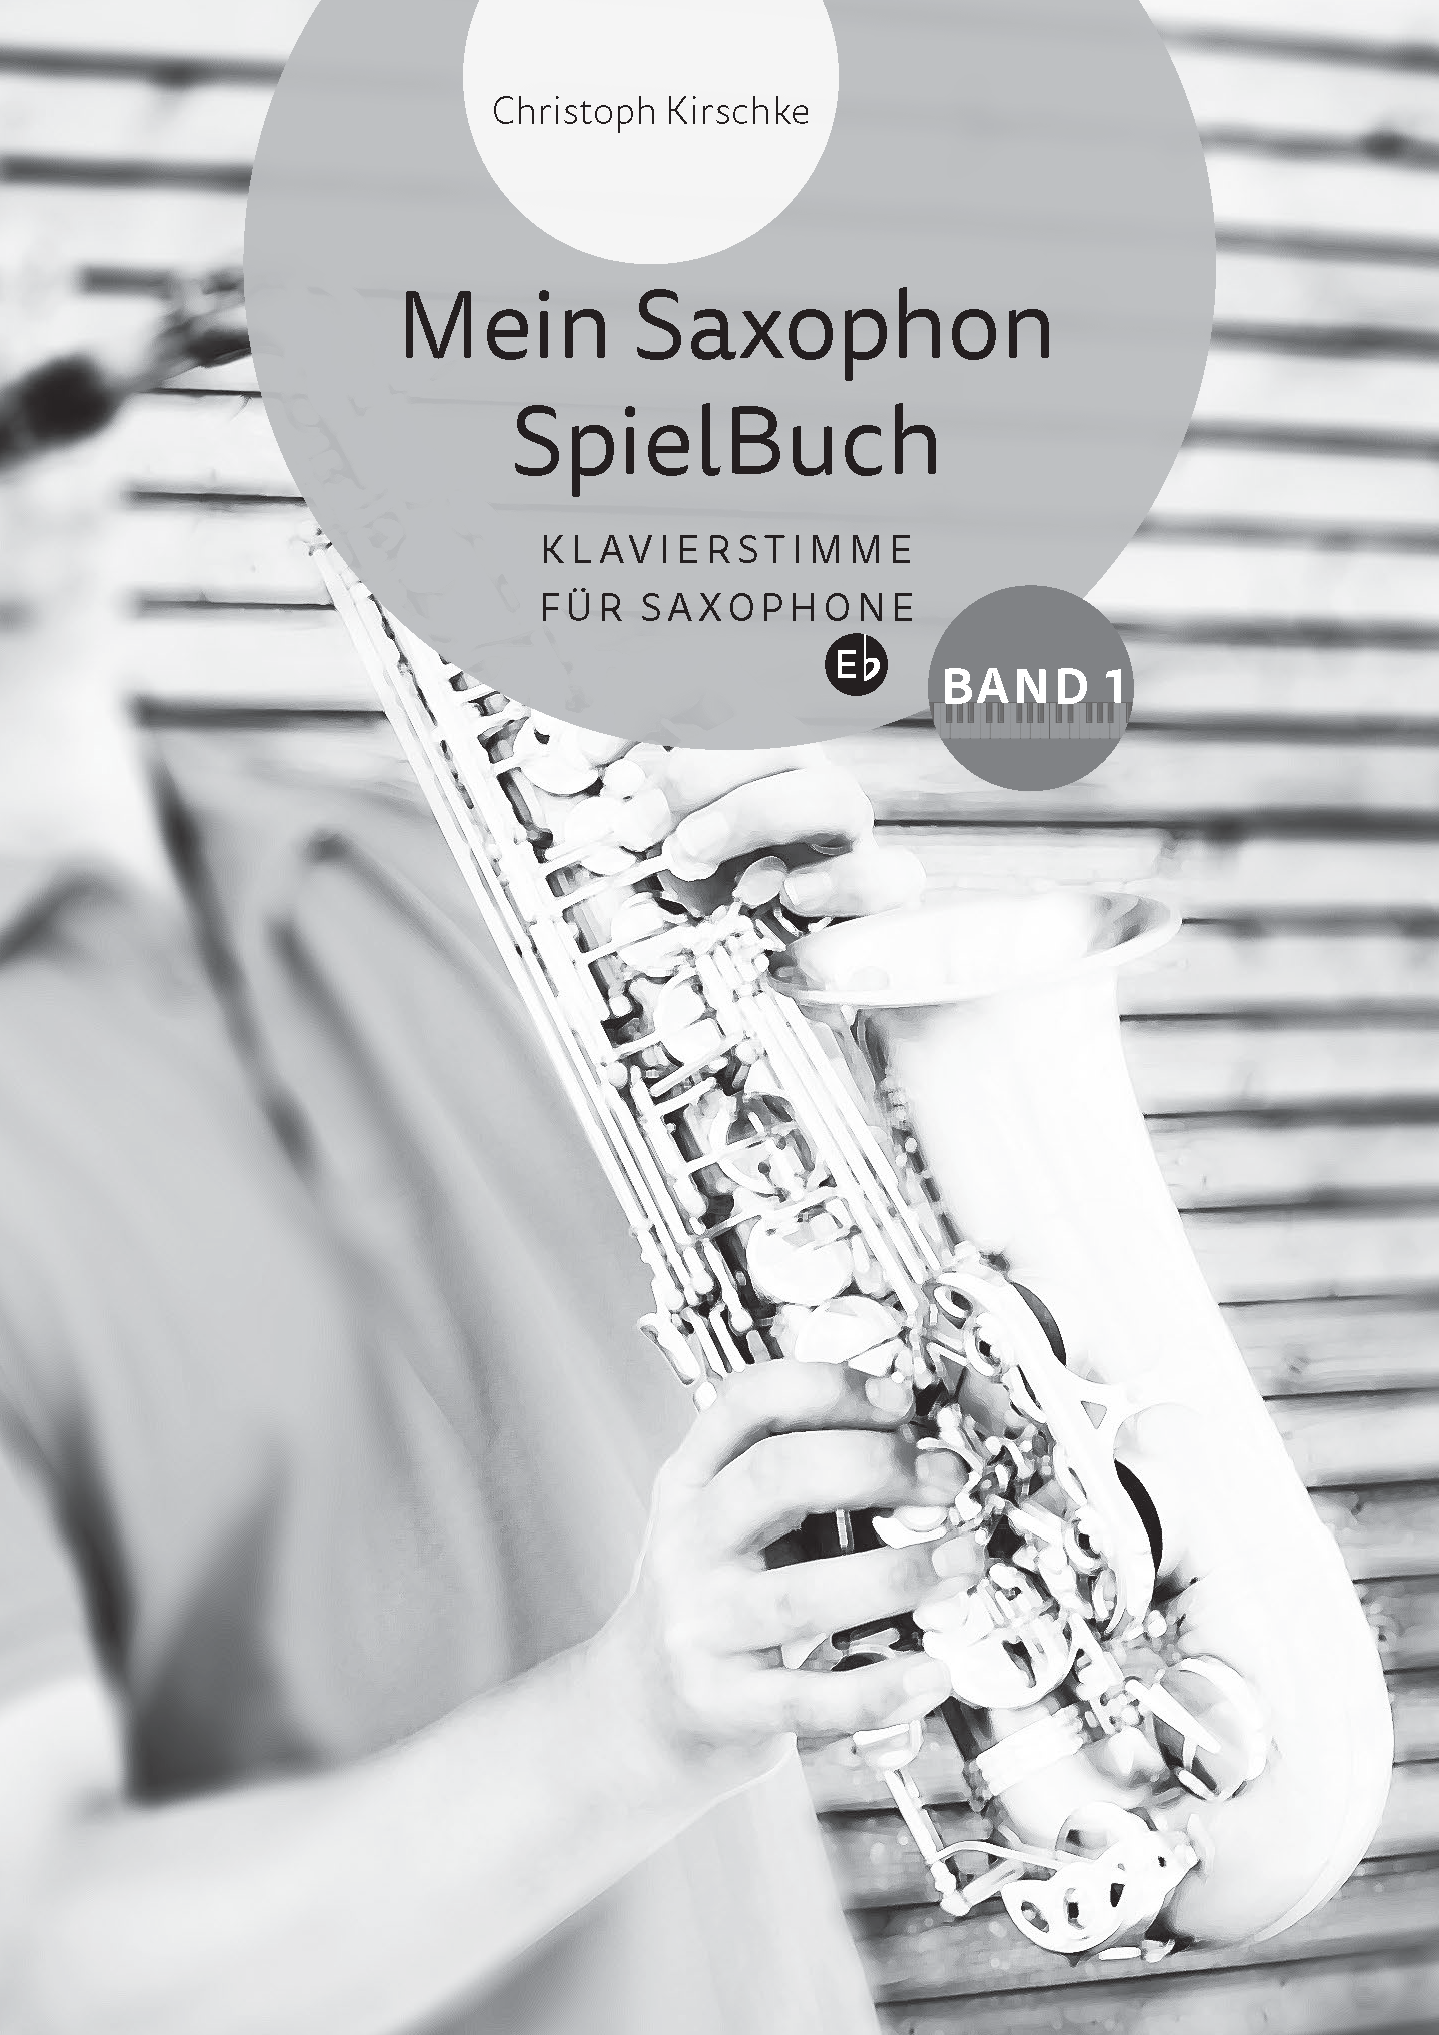 Christoph Kirschke – Saxophon lernen und spielen – Unterricht und Musikstücke – Mein Saxophone Buch, Titel